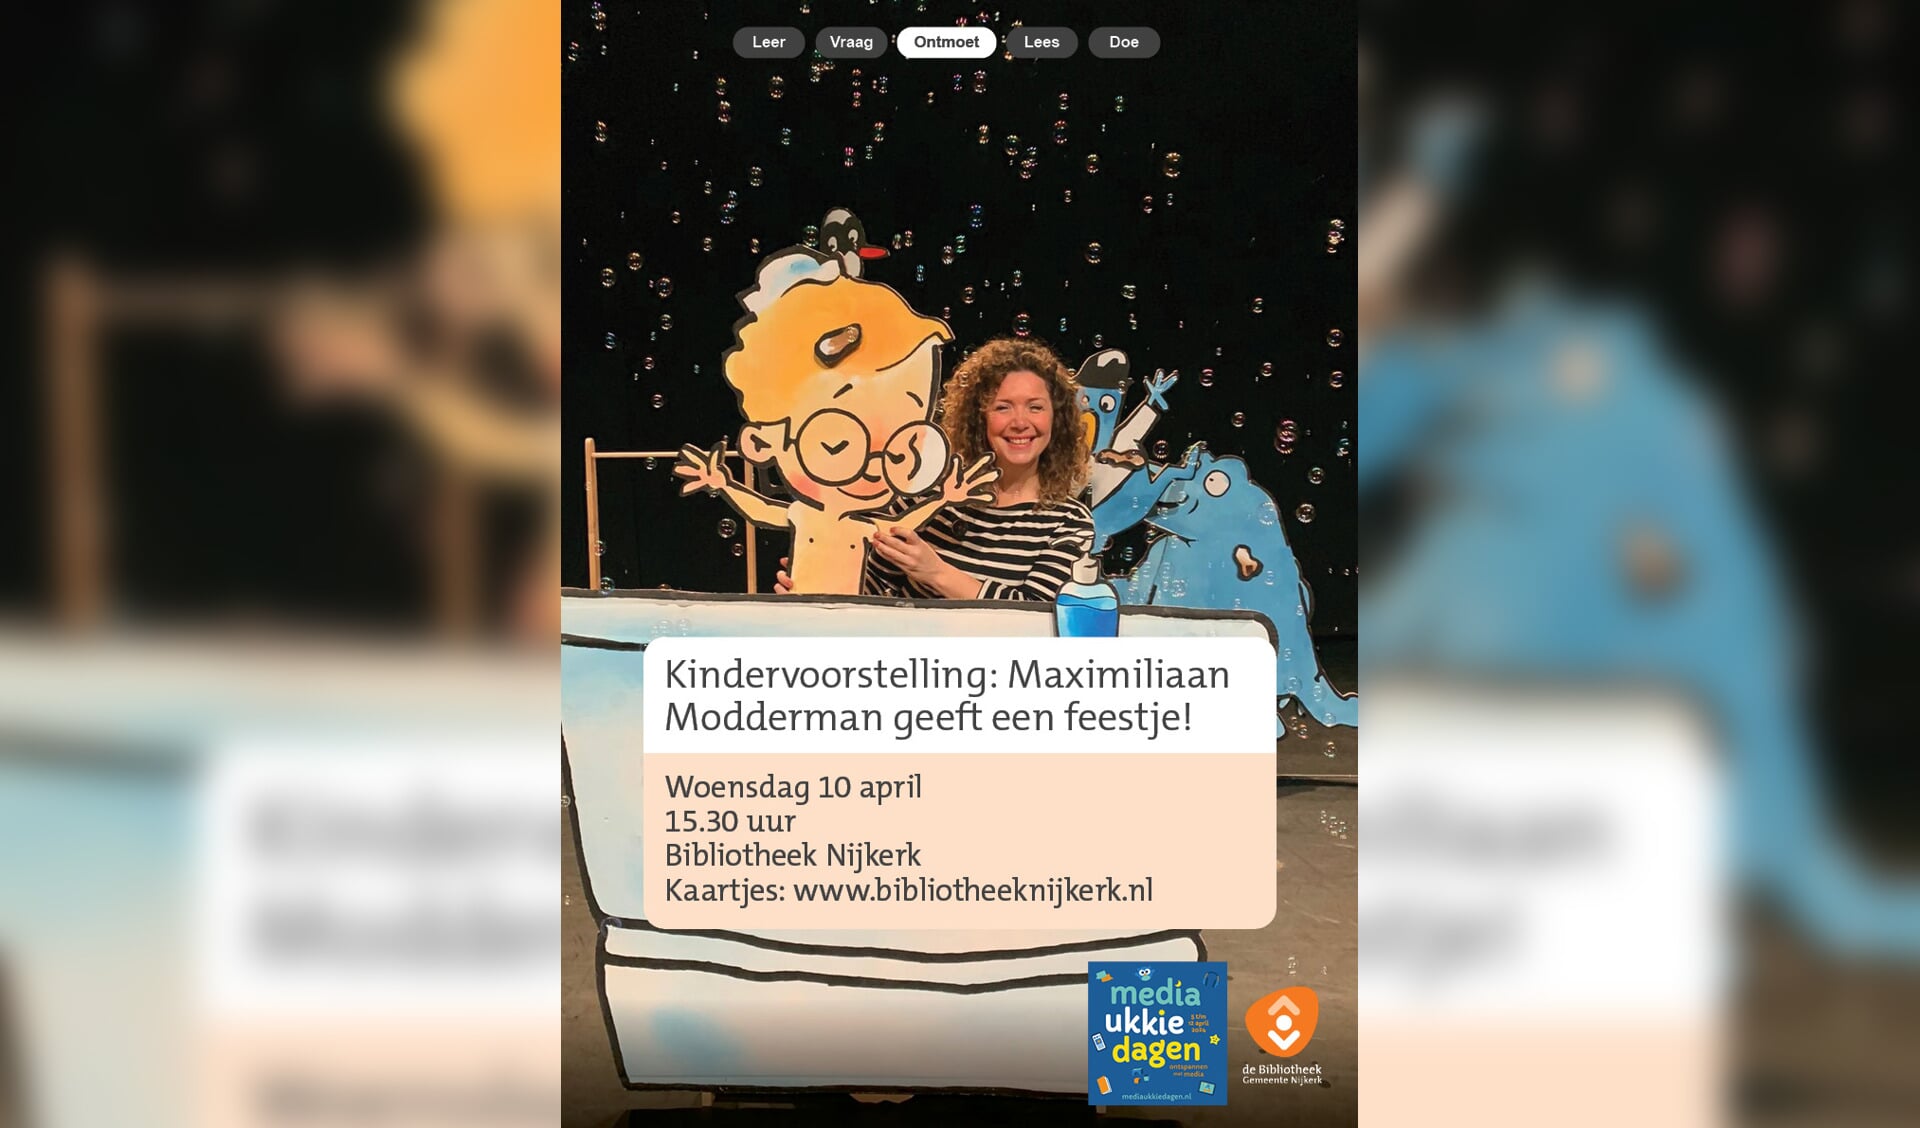 Kindervoorstelling in Bibliotheek Nijkerk: Maximiliaan Modderman geeft een feestje!